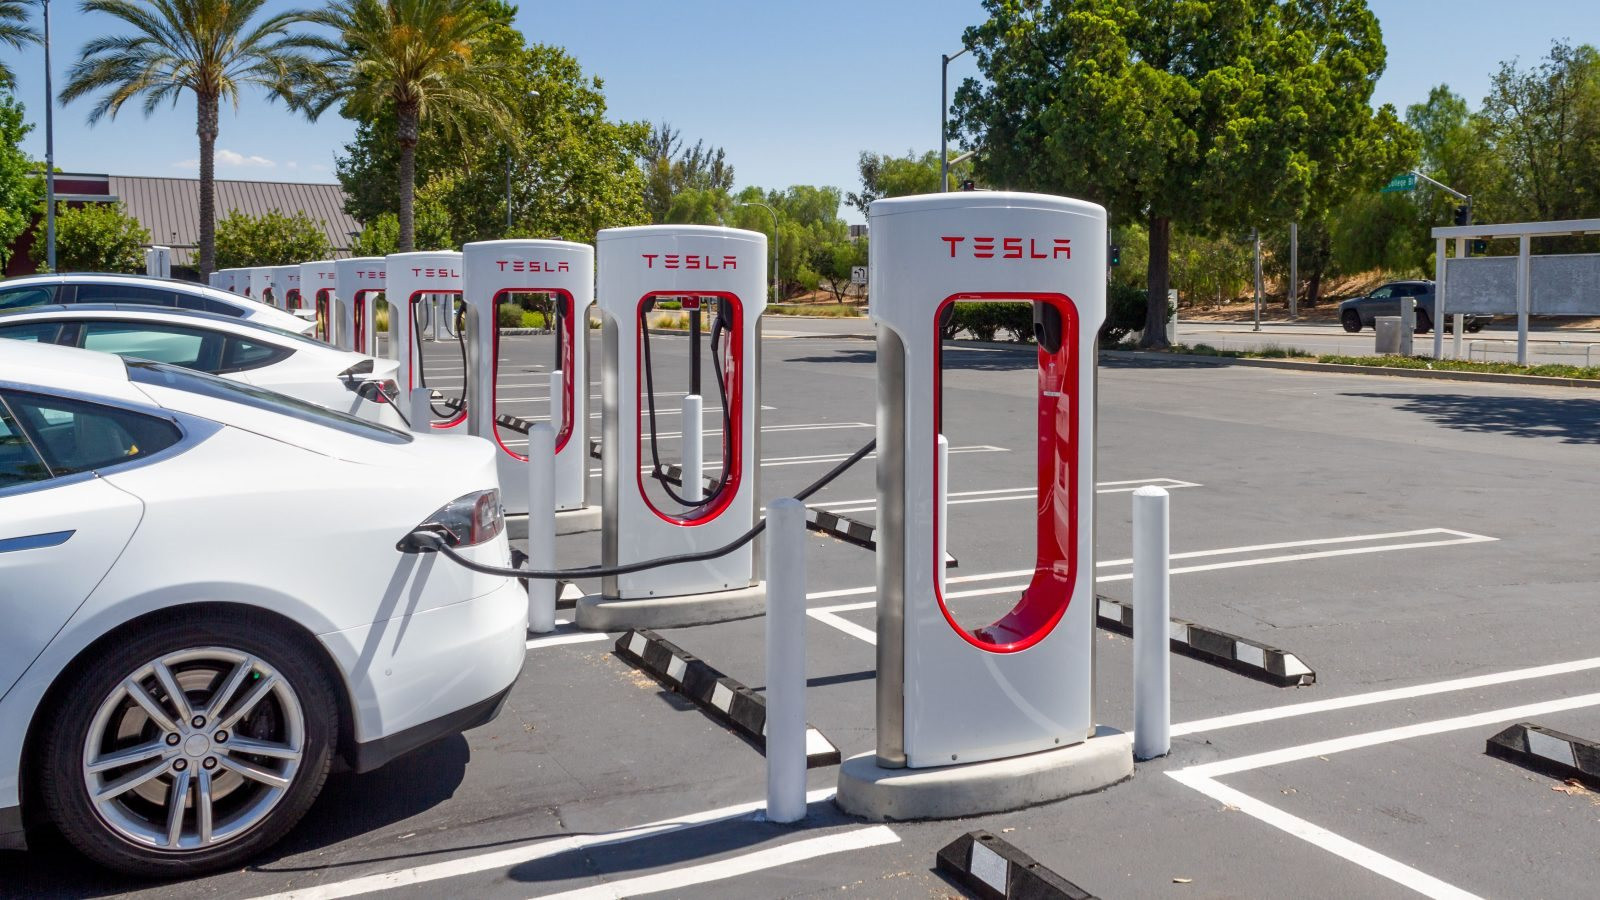 Lo sợ một ngày hệ thống trạm sạc Tesla thống trị nước Mỹ, 7 nhà sản xuất ô tô liền lập liên doanh cung cấp dịch vụ sạc xe điện - liệu VinFast có gia nhập? - Ảnh 3.